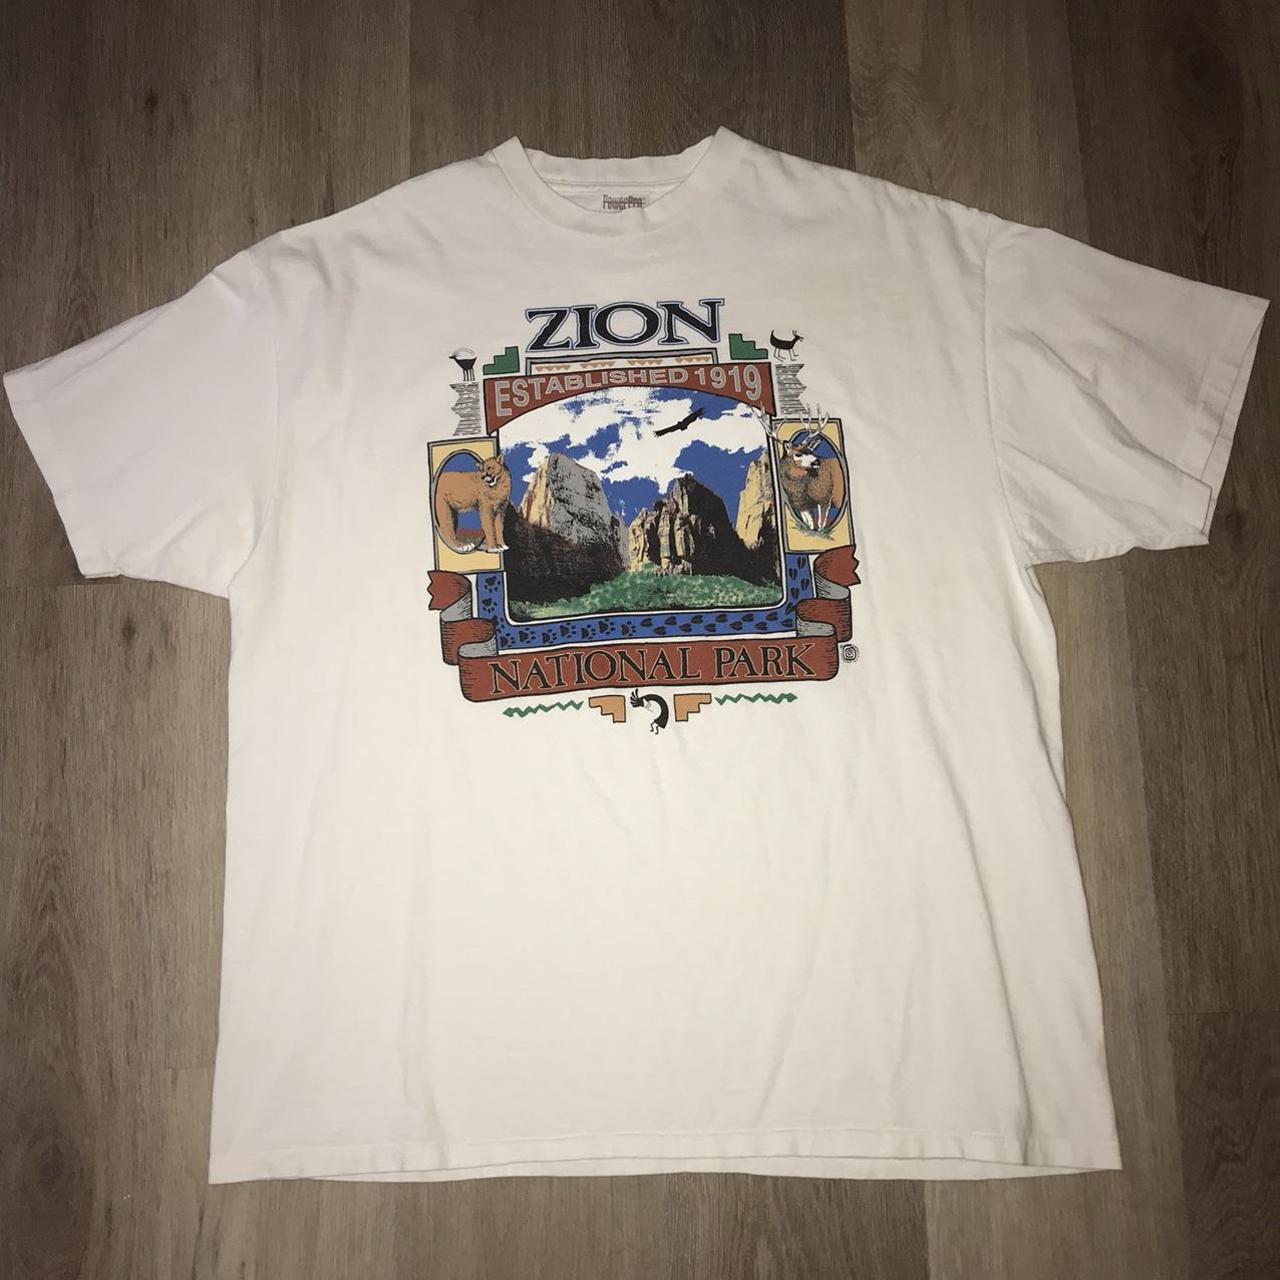 1990’s Mt. Zion National Park T-Shirt Size XL fits... - Depop